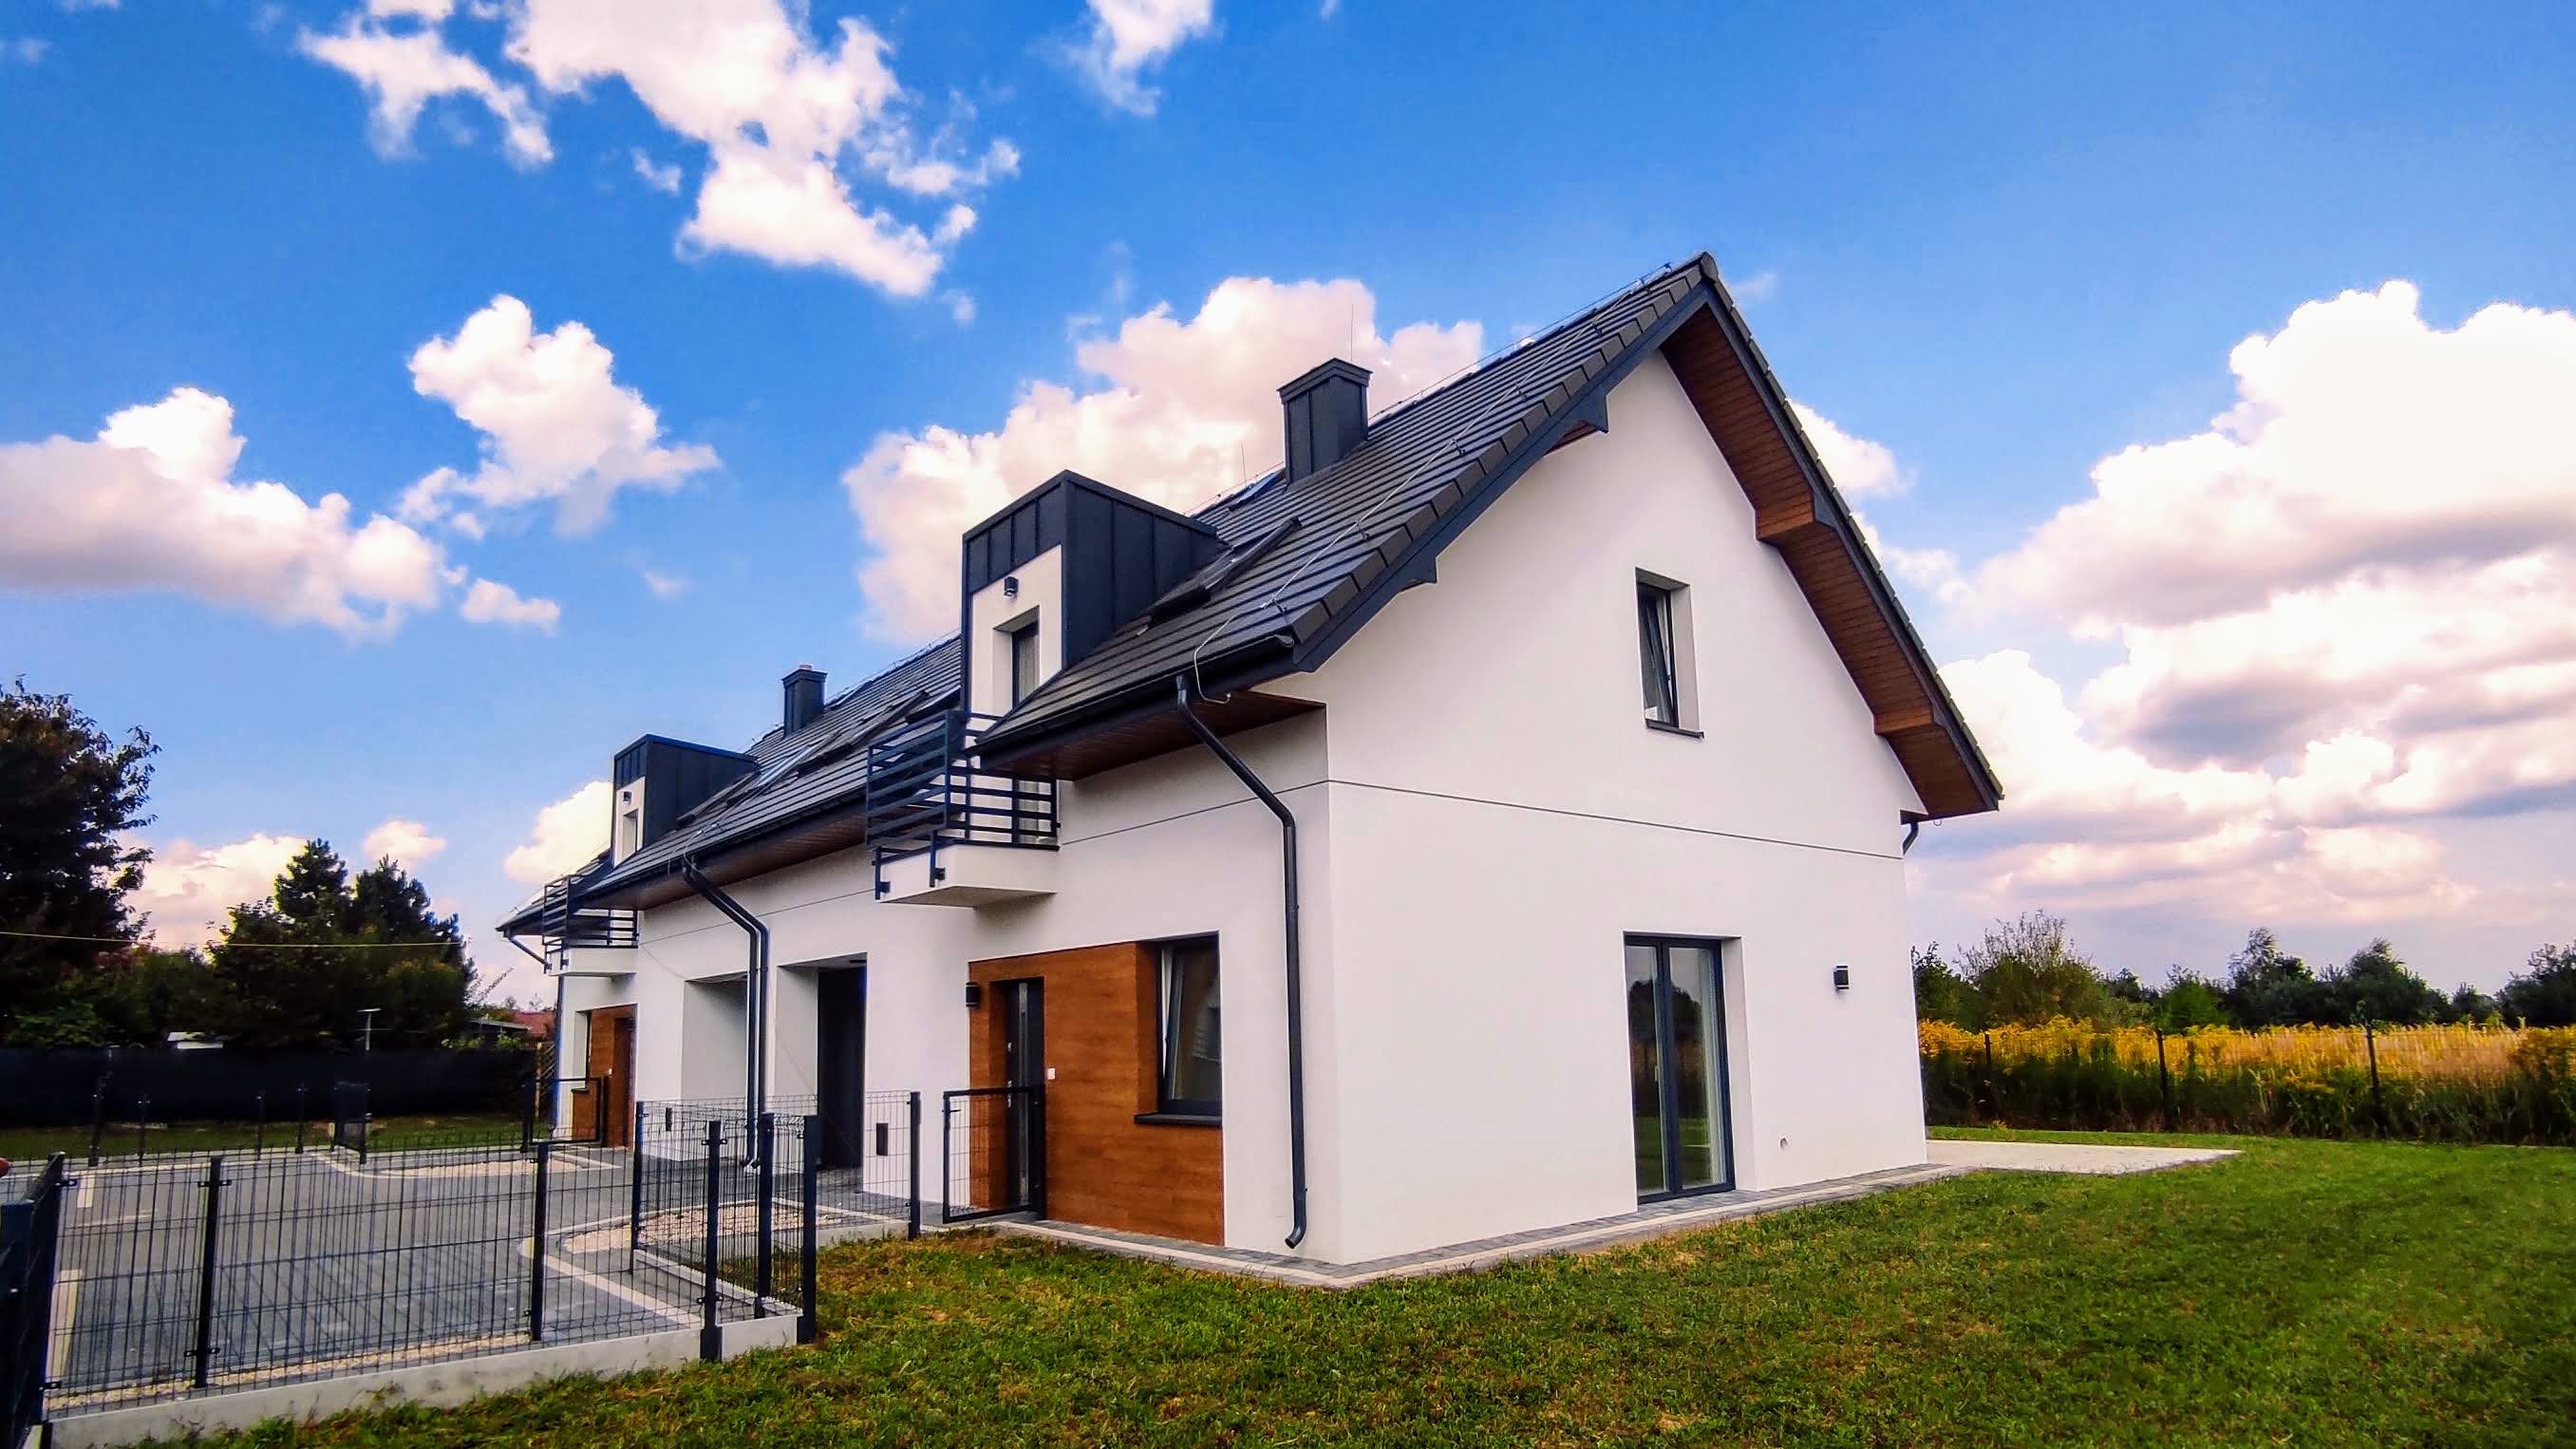 Nowe domy mieszkania jednorodzinne lubelskie Lublin